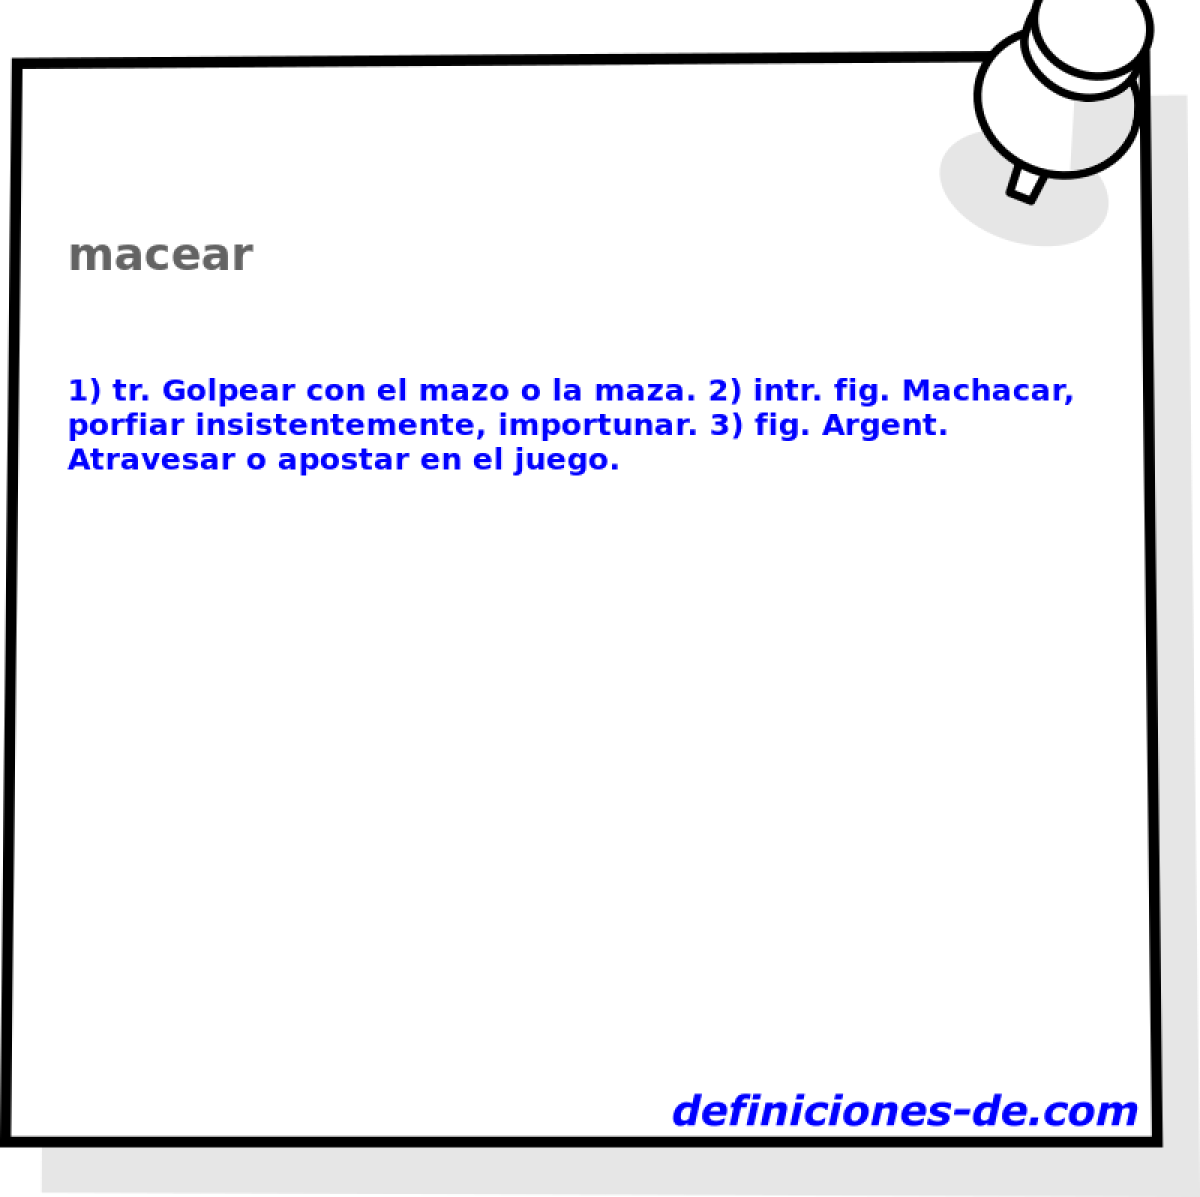 macear 